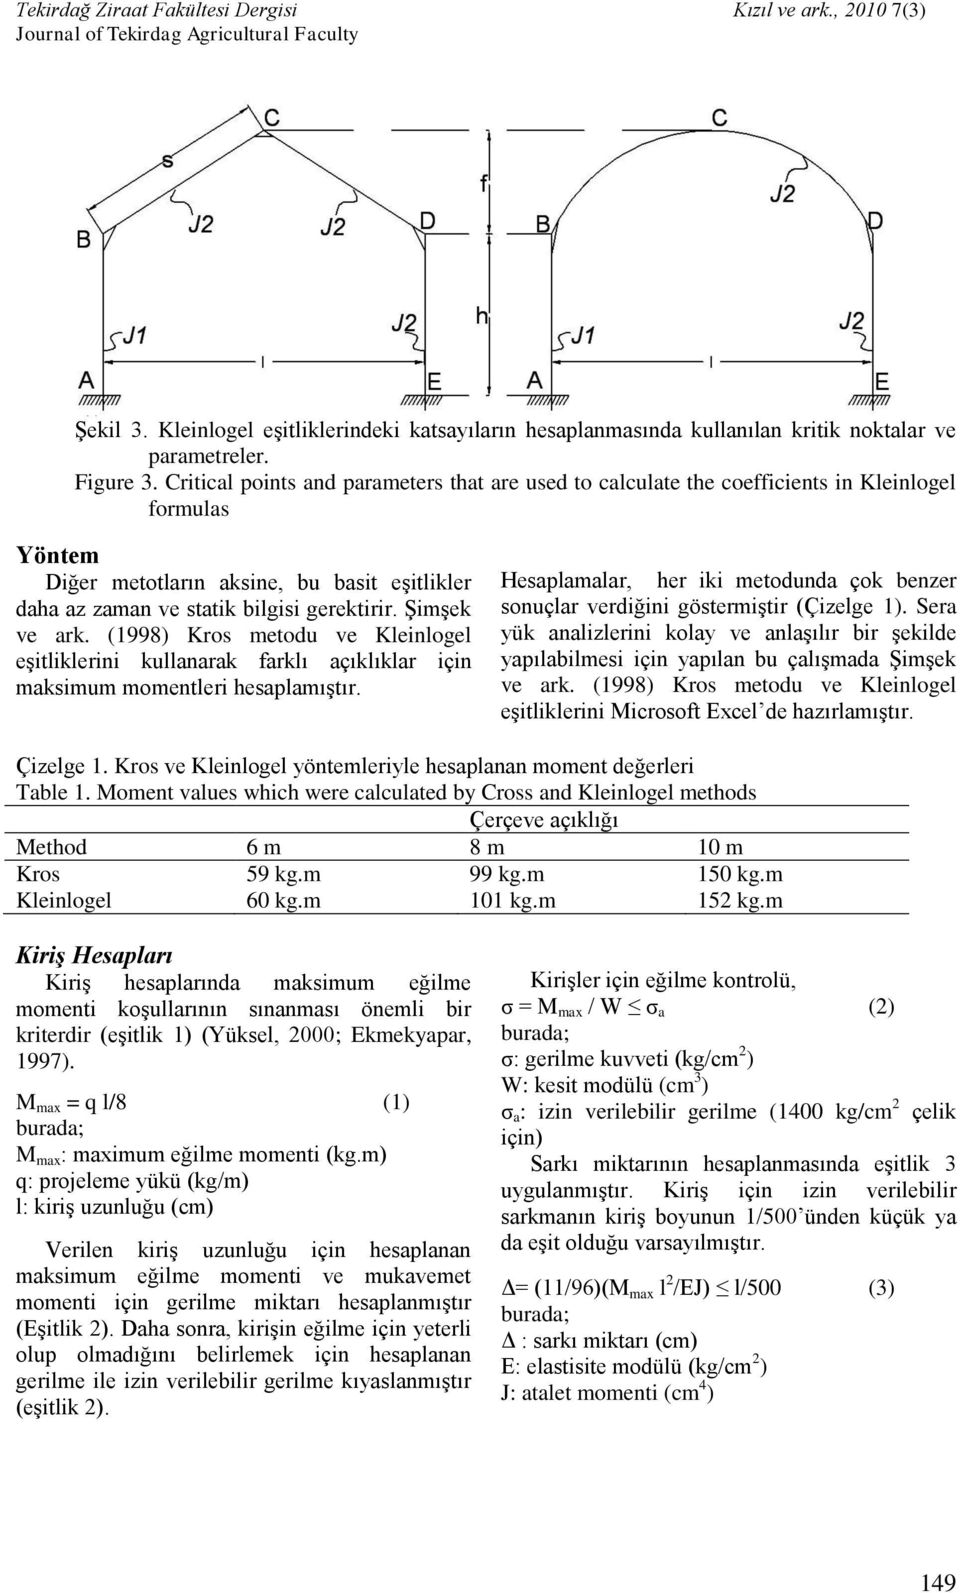 Şimşek ve ark. (1998) Kros metodu ve Kleinlogel eşitliklerini kullanarak farklı açıklıklar için maksimum momentleri hesaplamıştır.